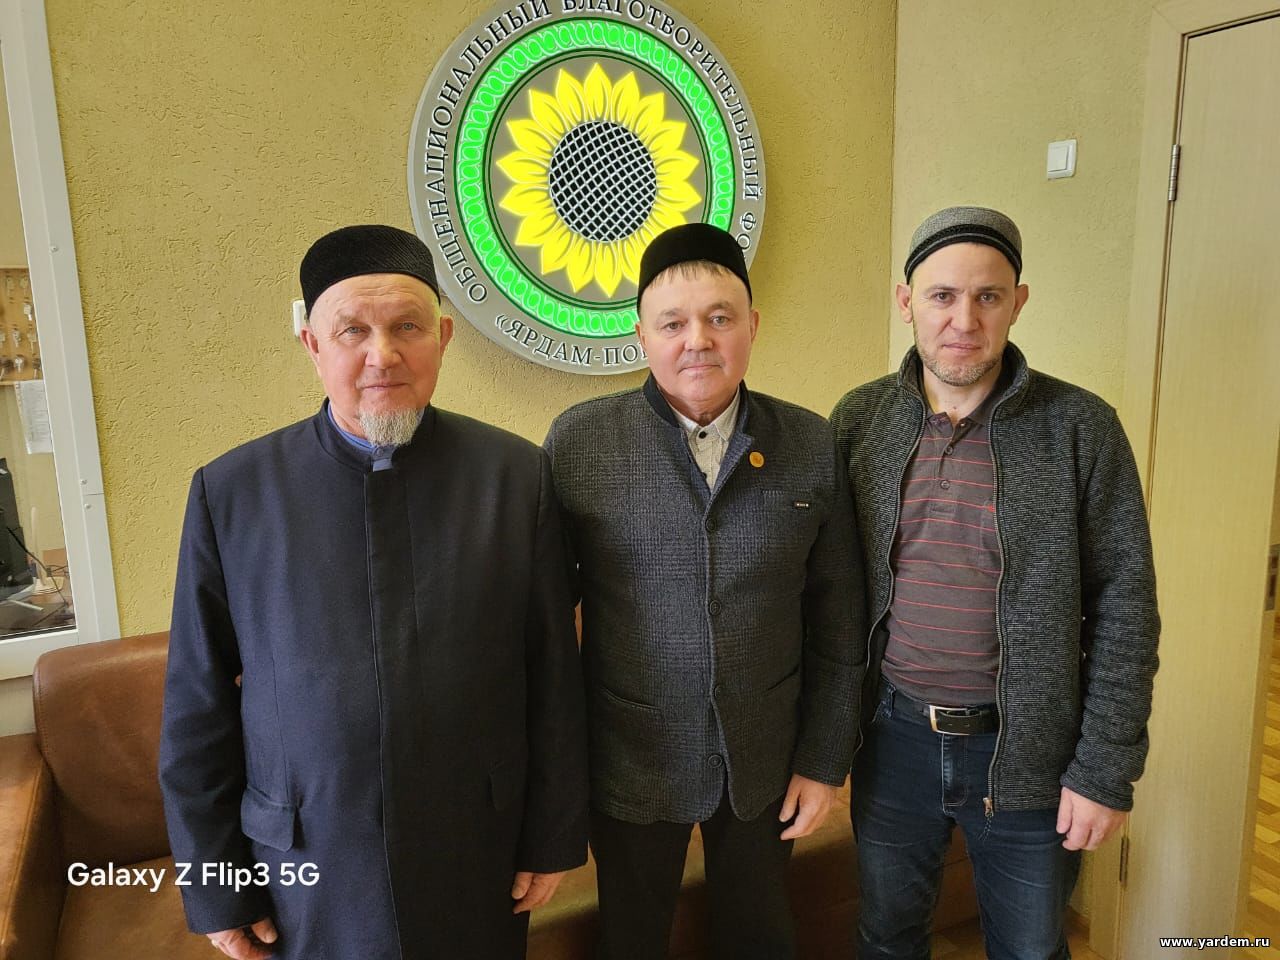 Пансионат «Ярдам-Помощь» посетил ректор Болгарской исламской академии. Общие новости